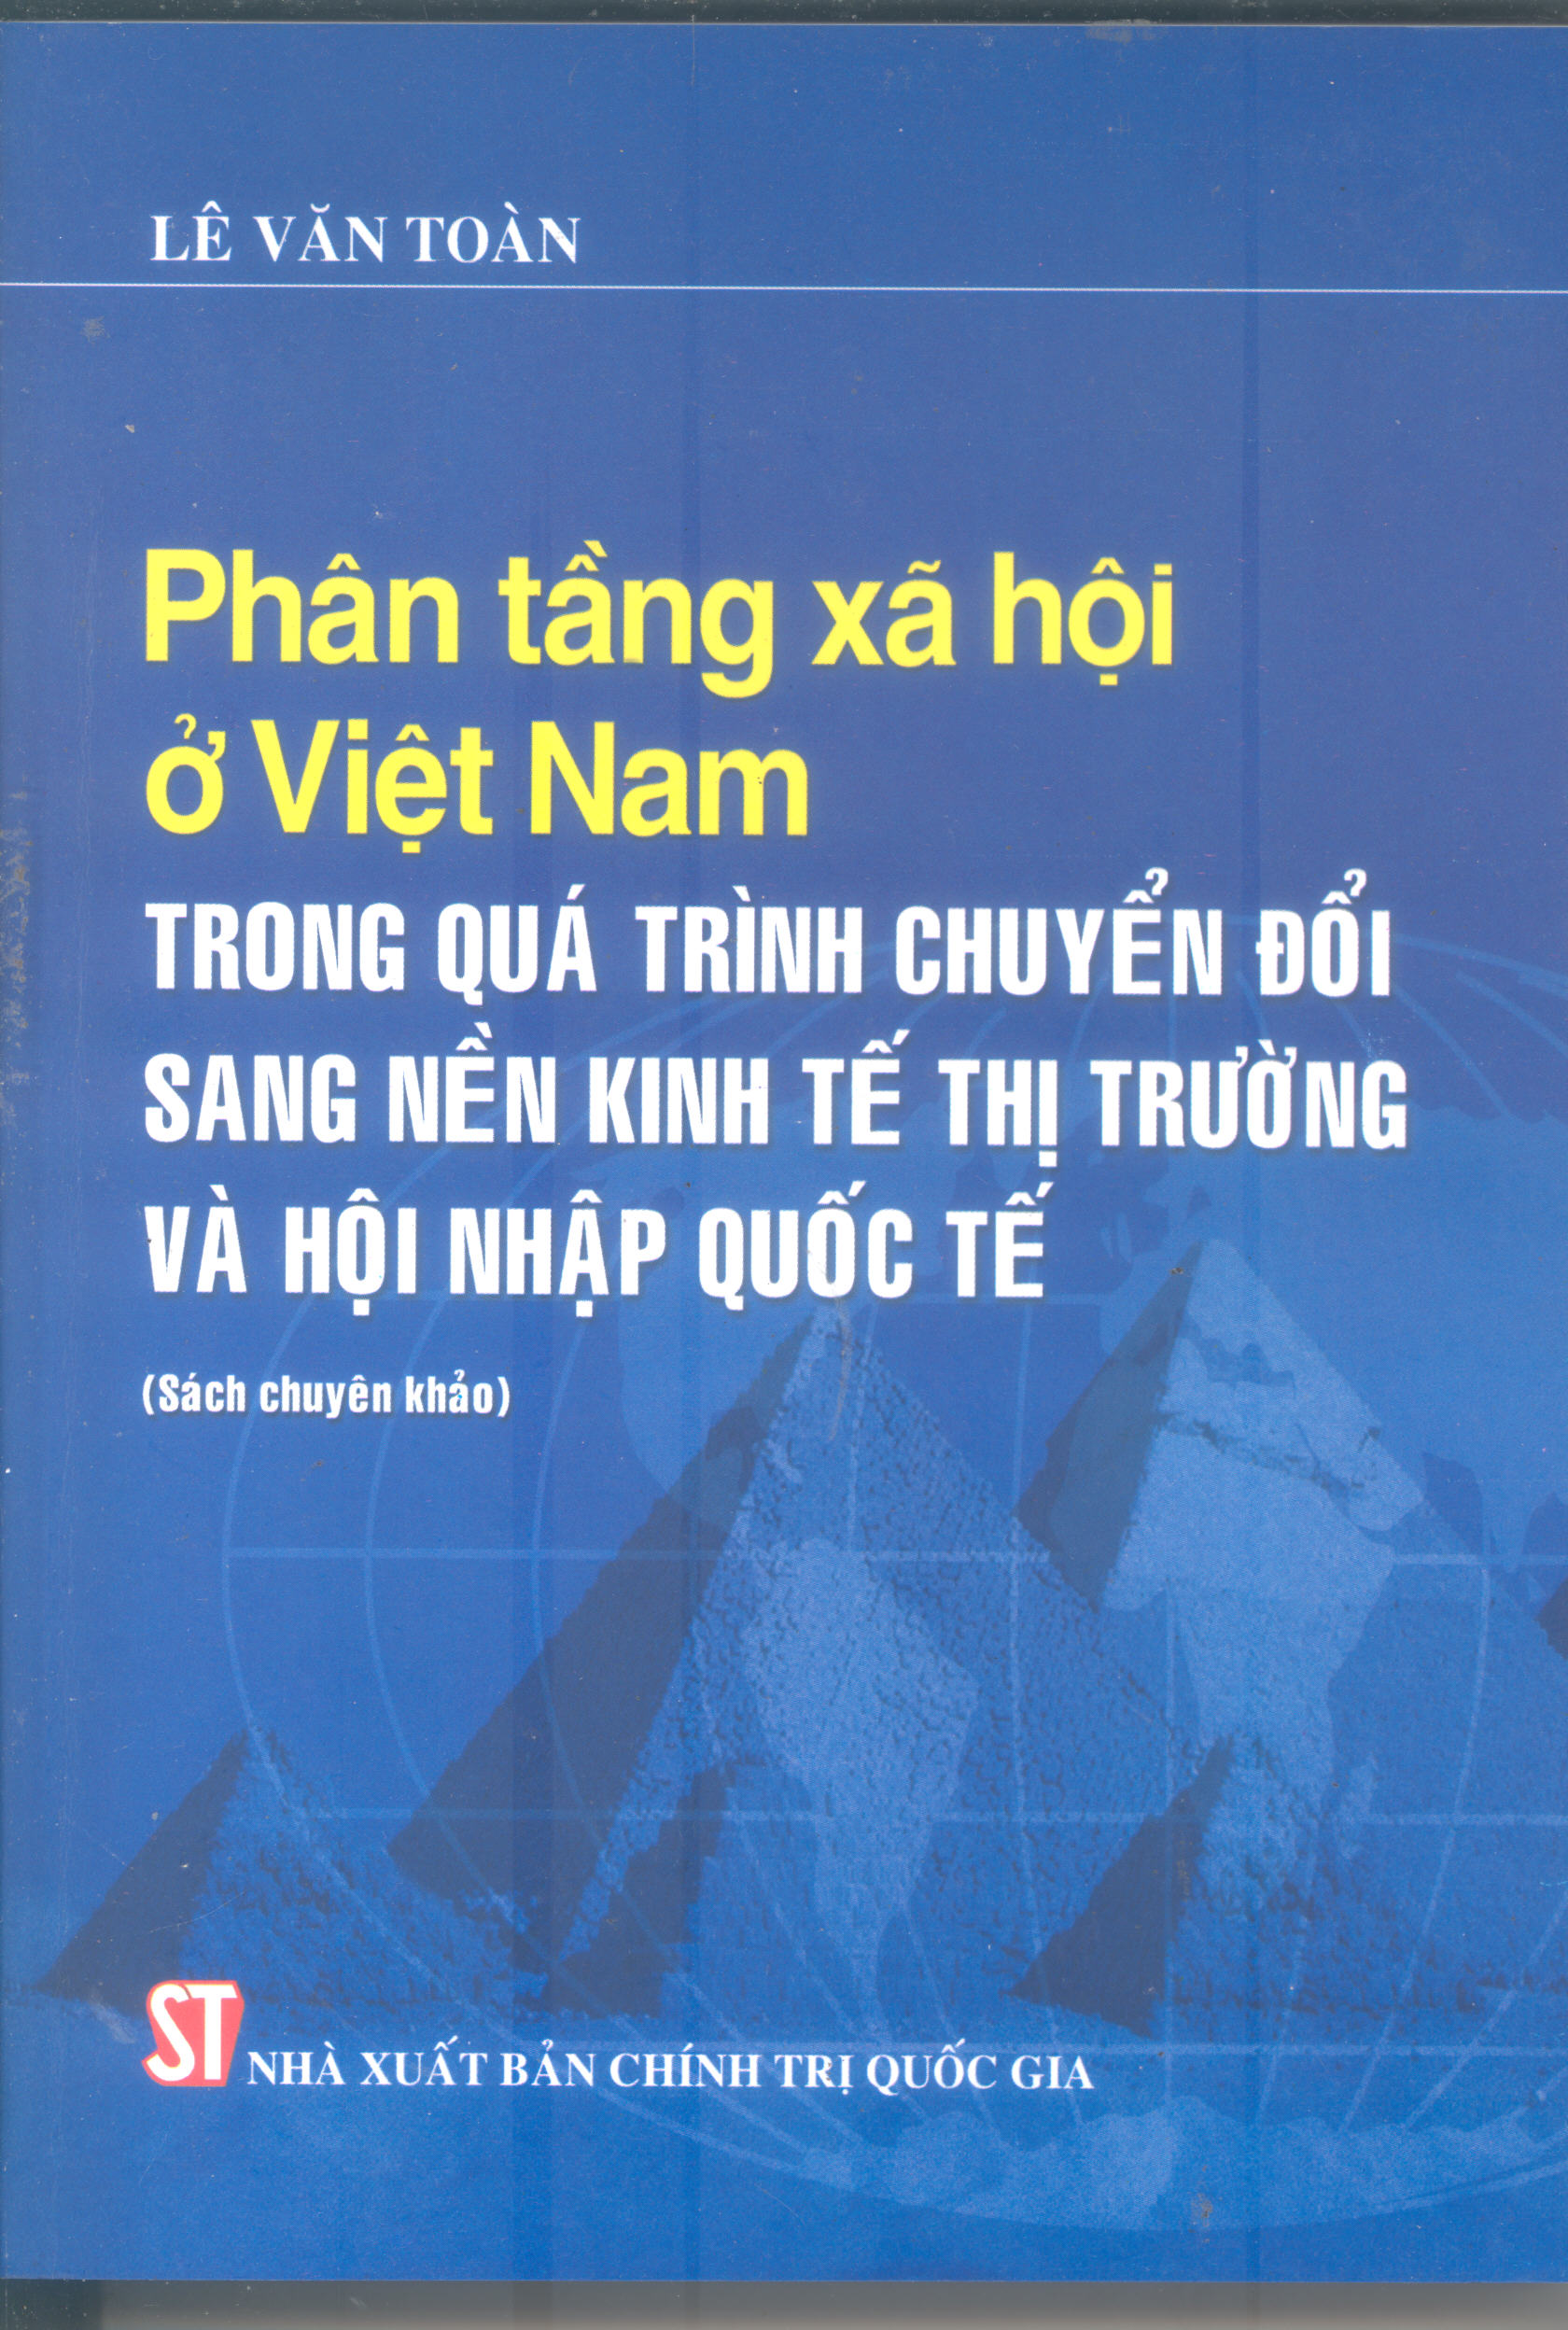 Phân tầng xã hội ở Việt Nam trong quá trình chuyển đổi sang nền kinh tế thị trường và hội nhập quốc tế